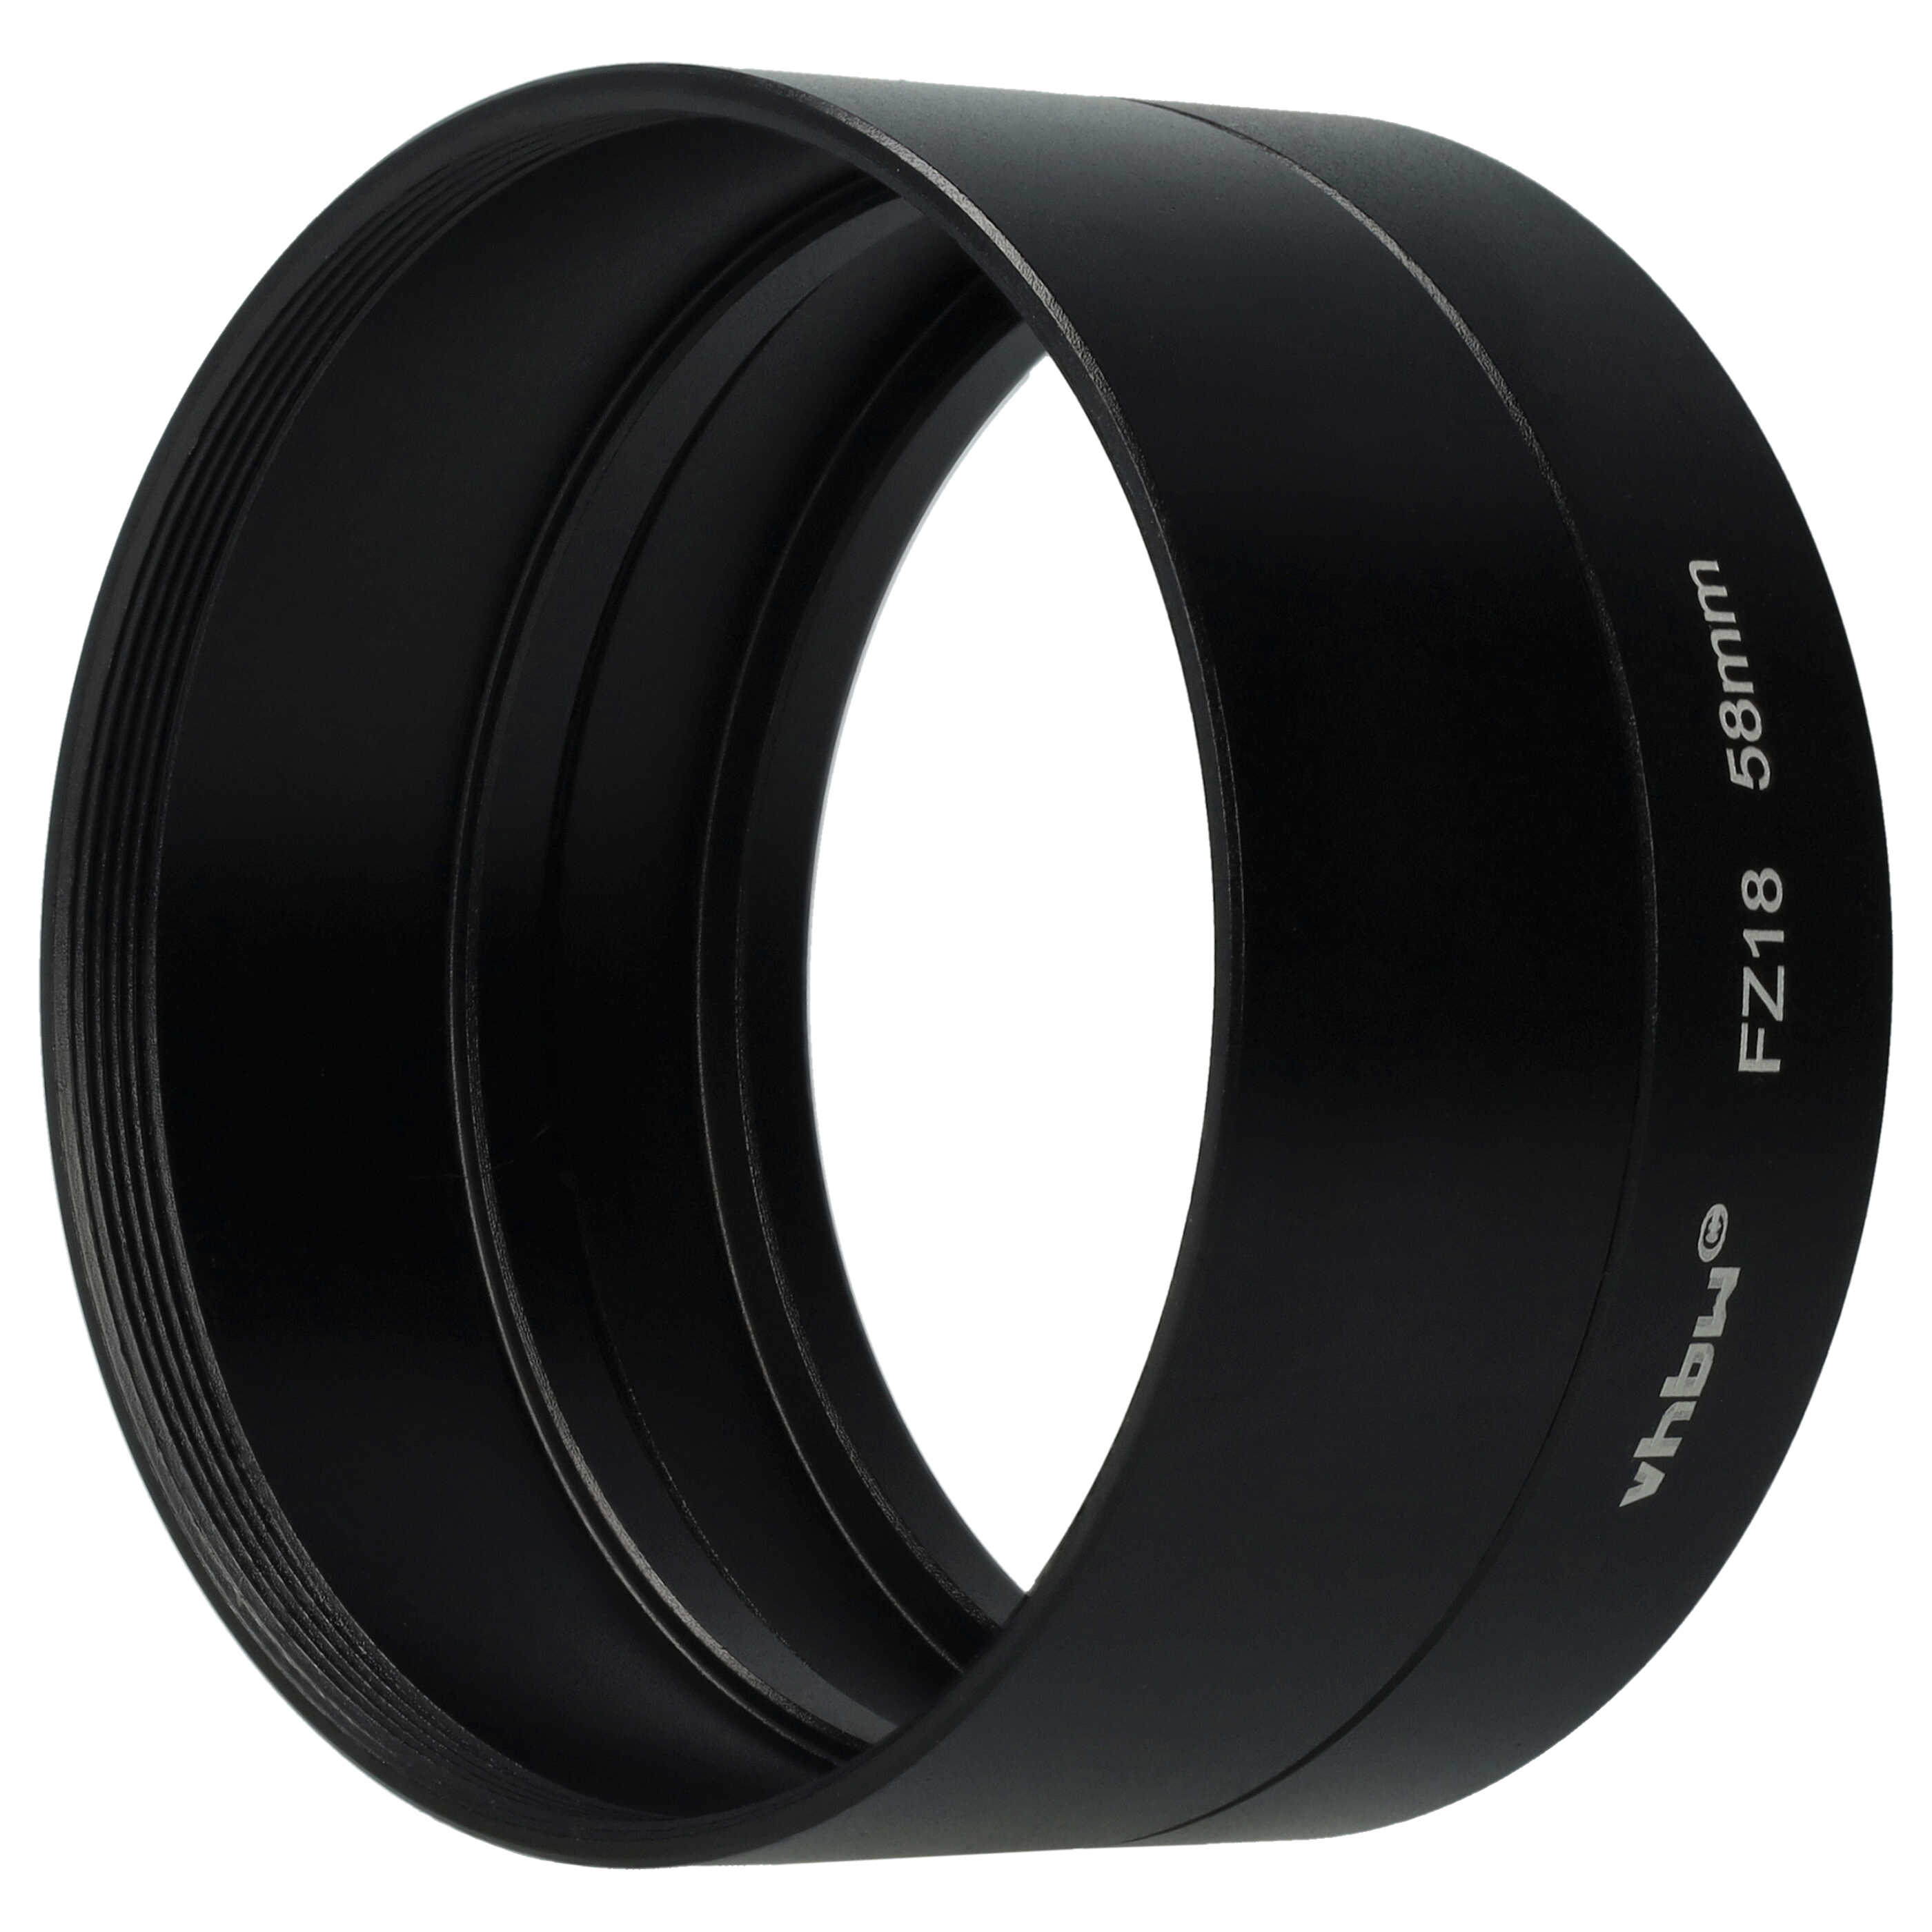 58 mm Filter Adapter, Tubular suitable for Panasonic Lumix DMC-FZ18 Camera Lens